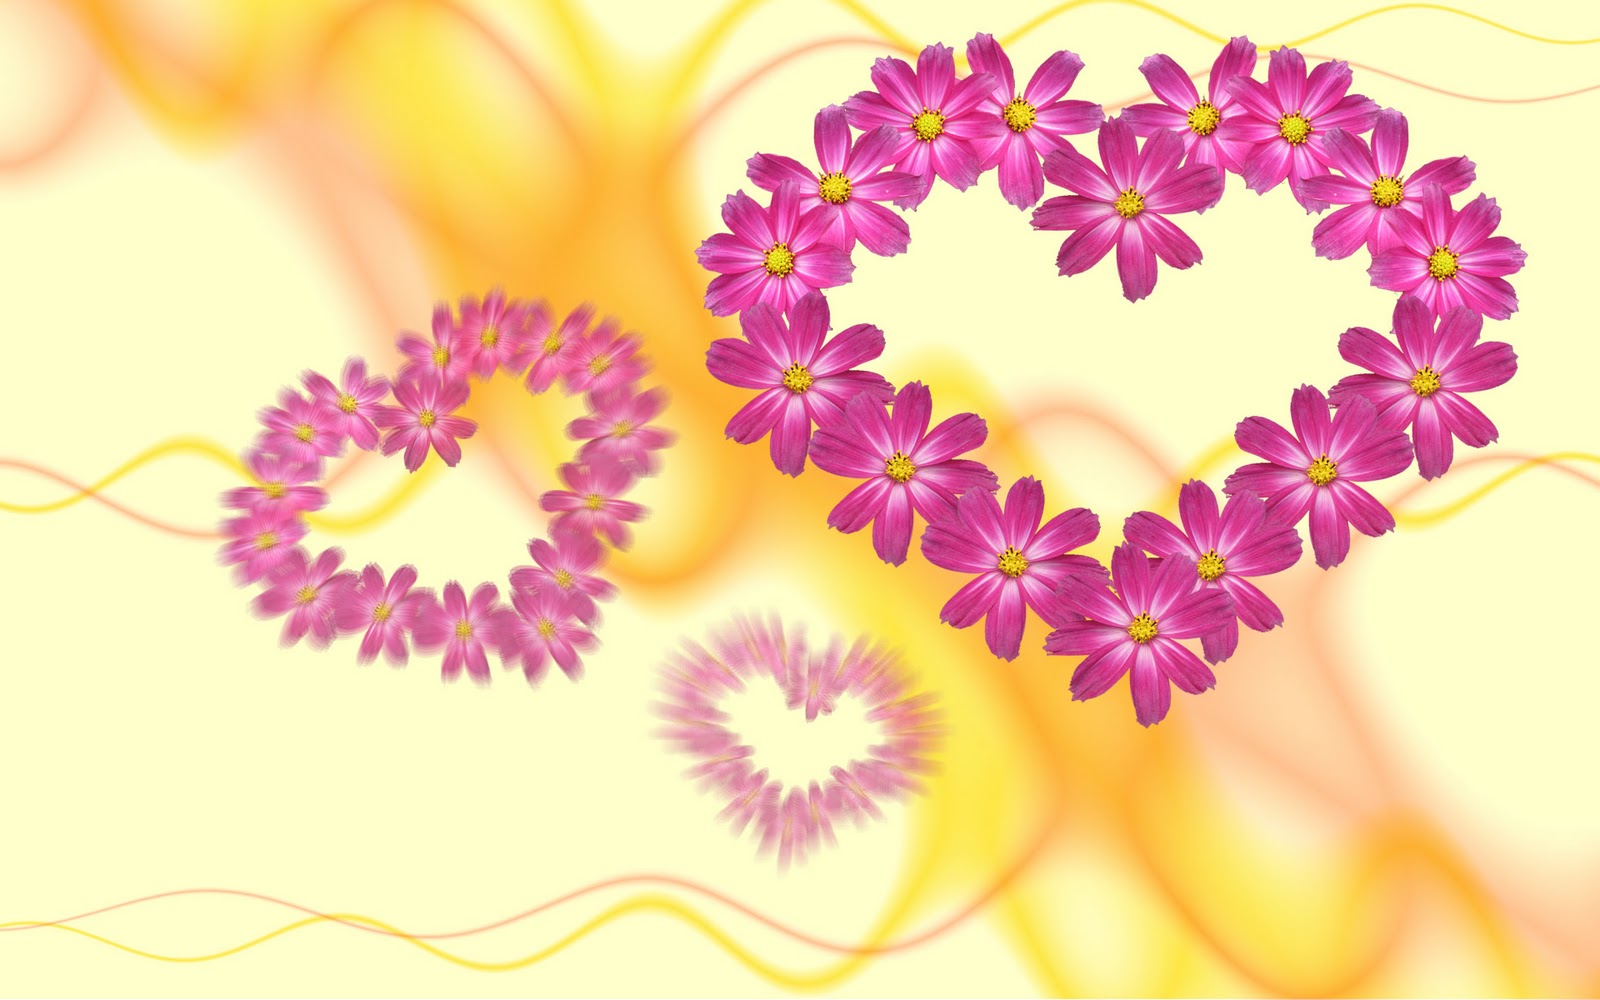 Beautiful Heart Flowers - Immagini Con Cuori E Fiori - HD Wallpaper 